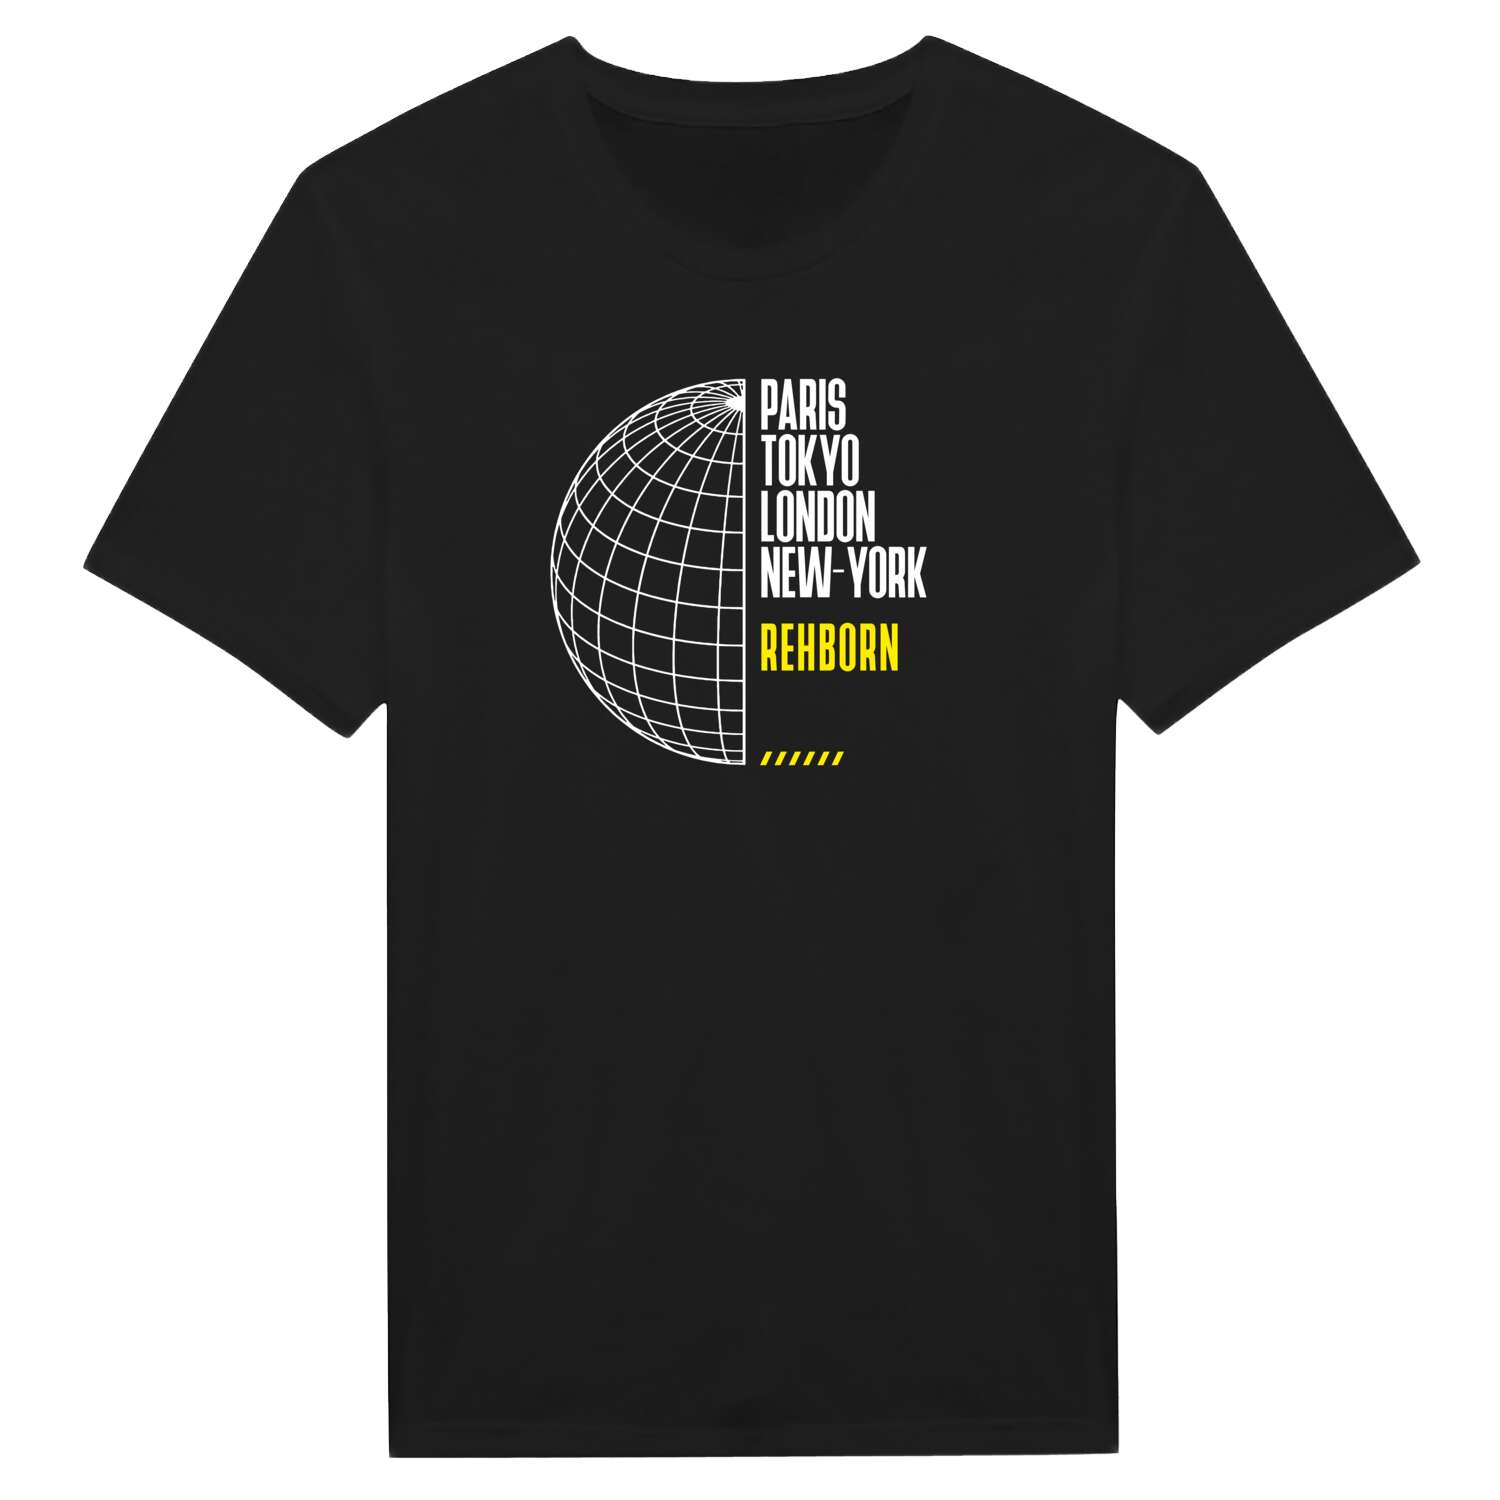 Rehborn T-Shirt »Paris Tokyo London«